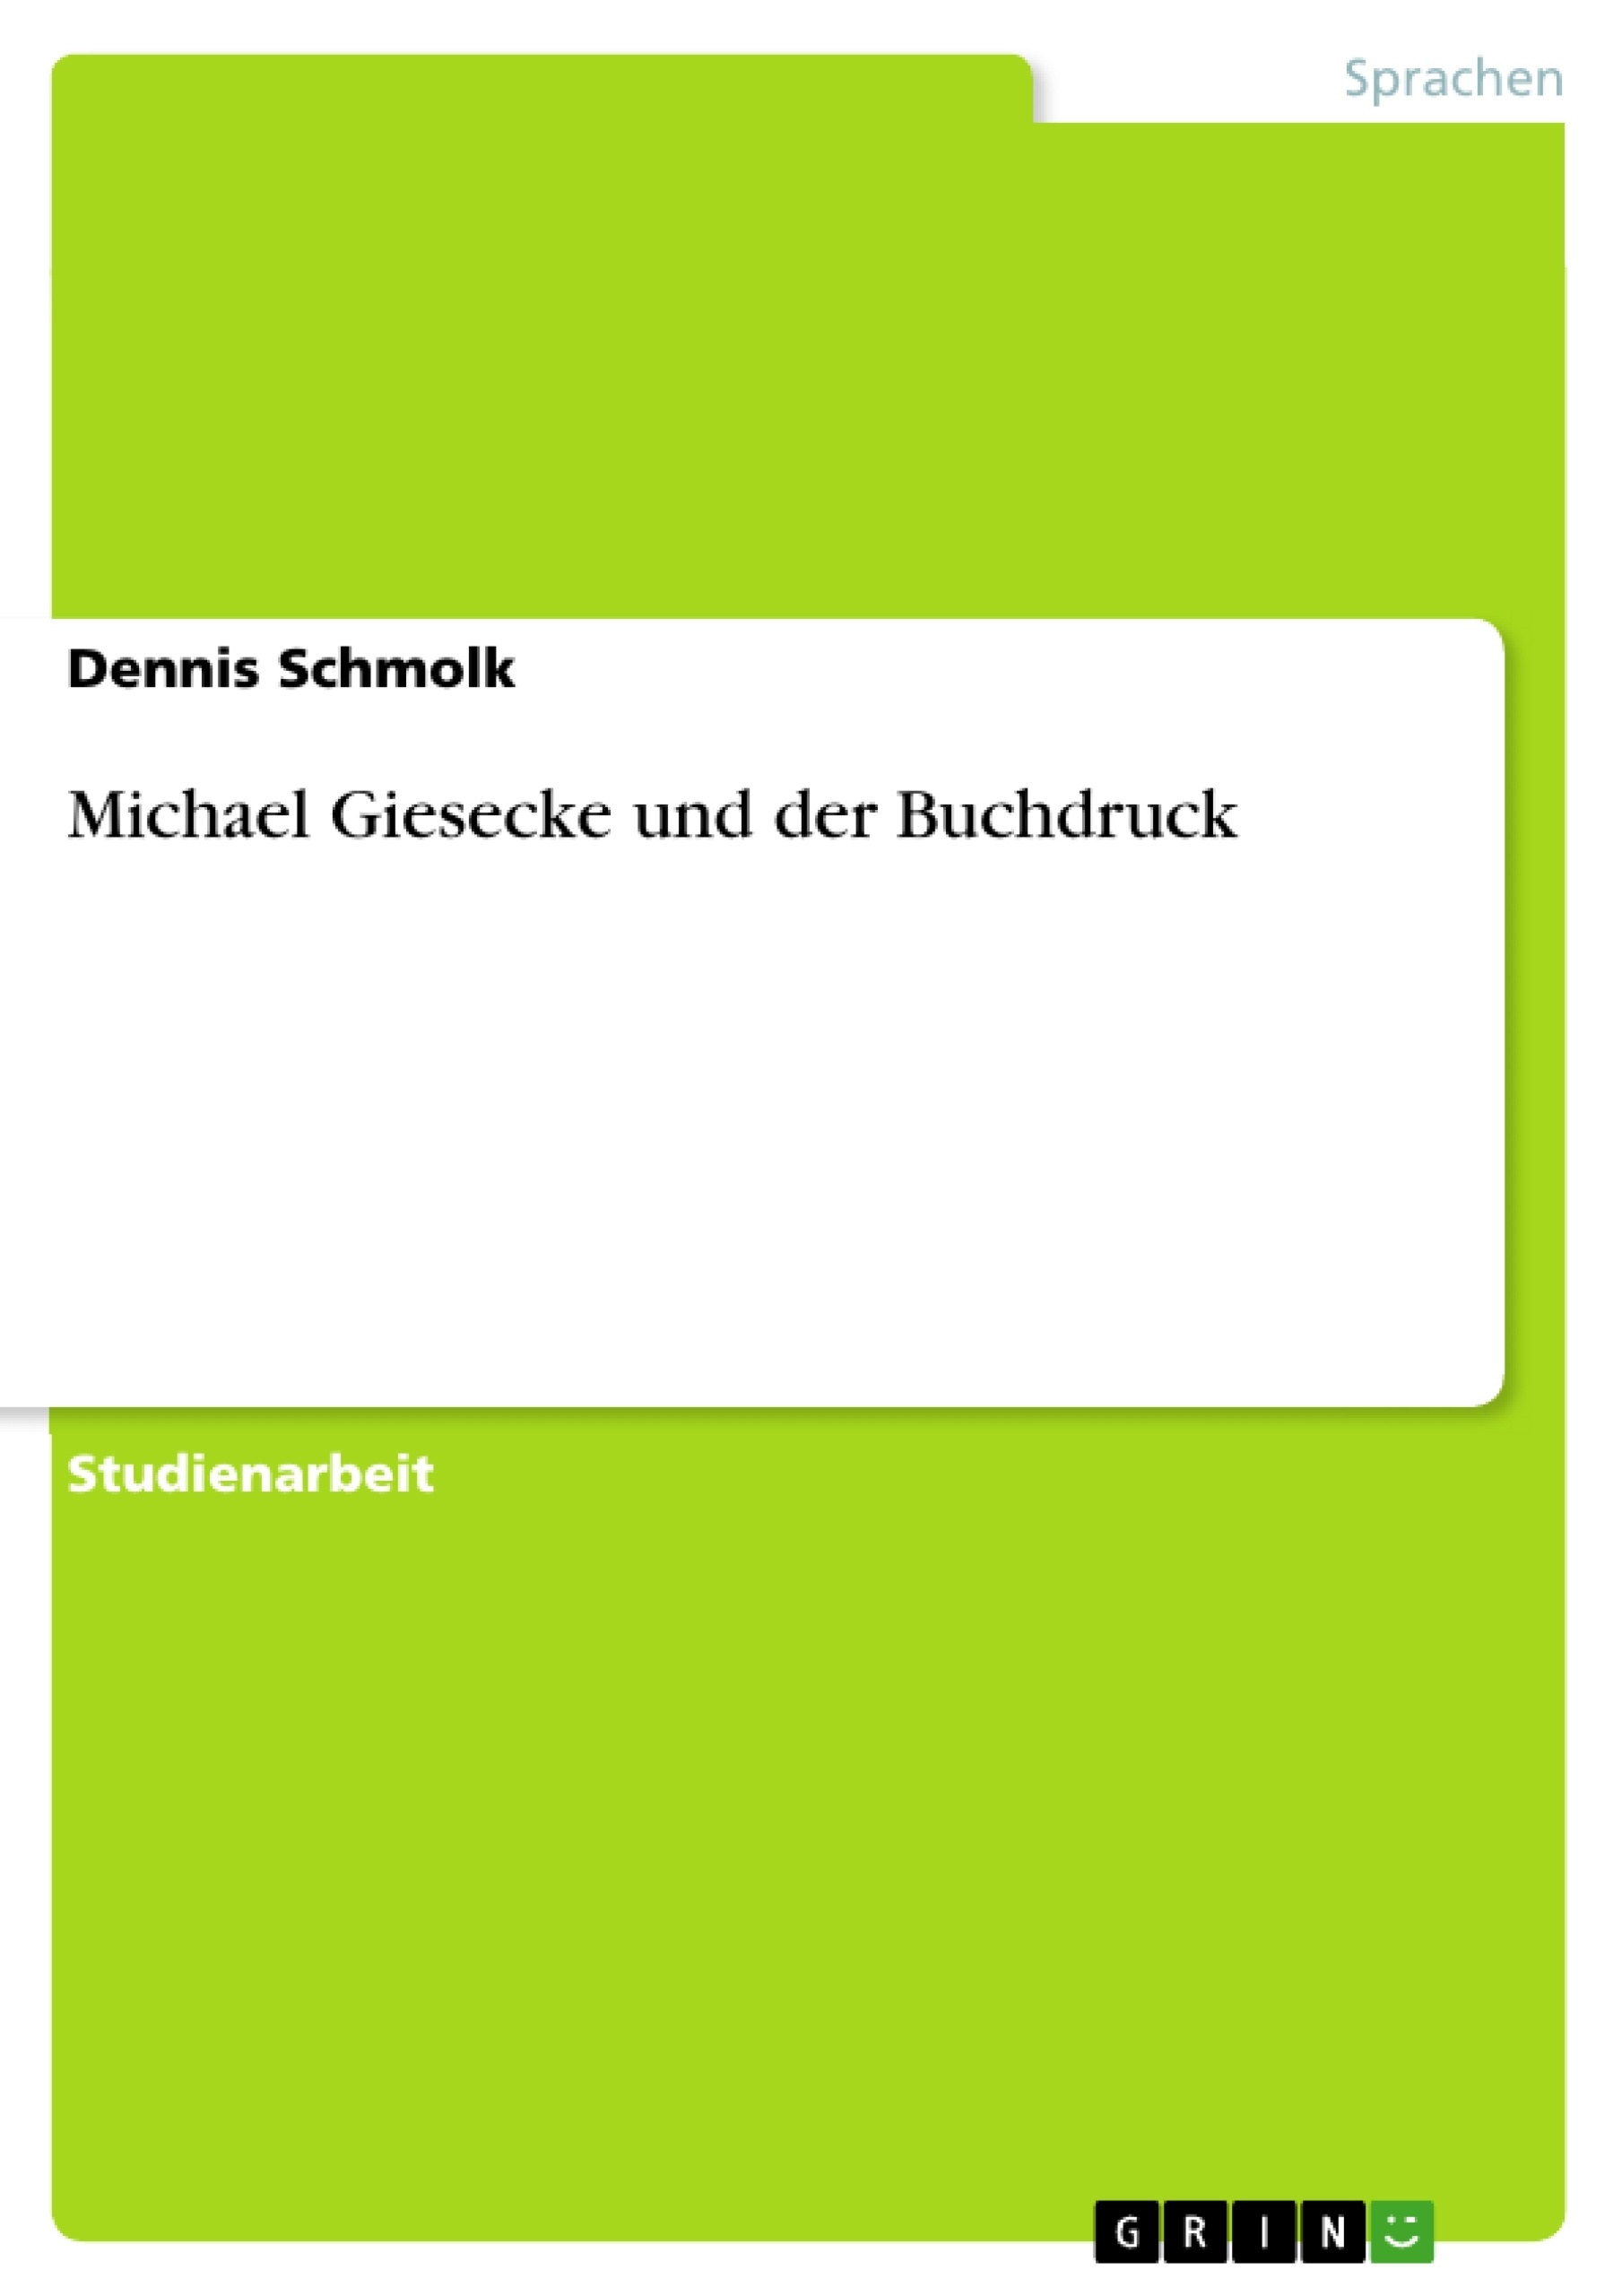 Título: Michael Giesecke und der Buchdruck